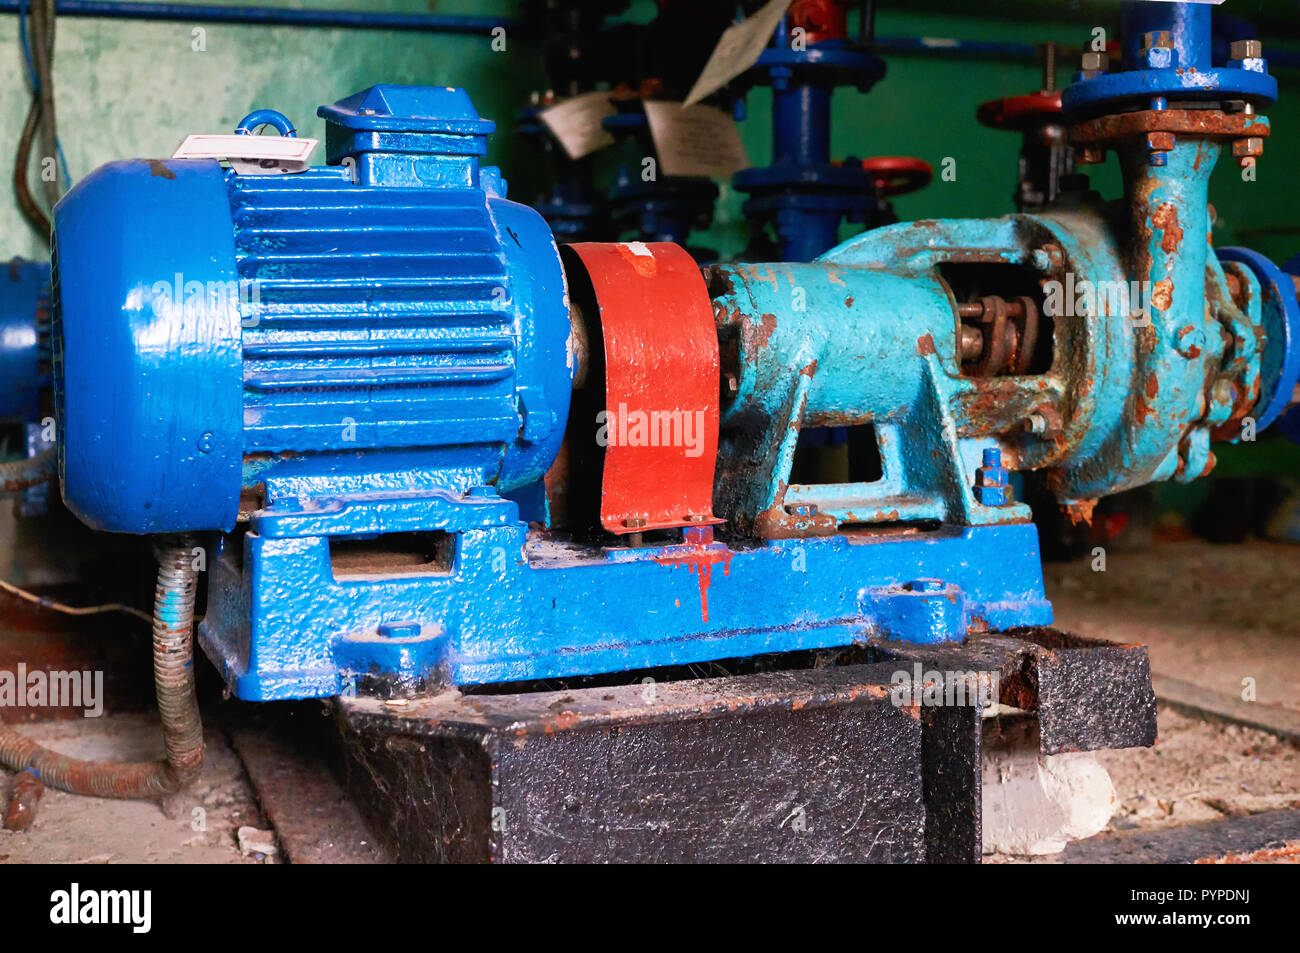 Vieux, rouillé rayures pompe à eau avec un moteur électrique teintée dans la couleur bleue sur le tuyau d'eau froide. Banque D'Images